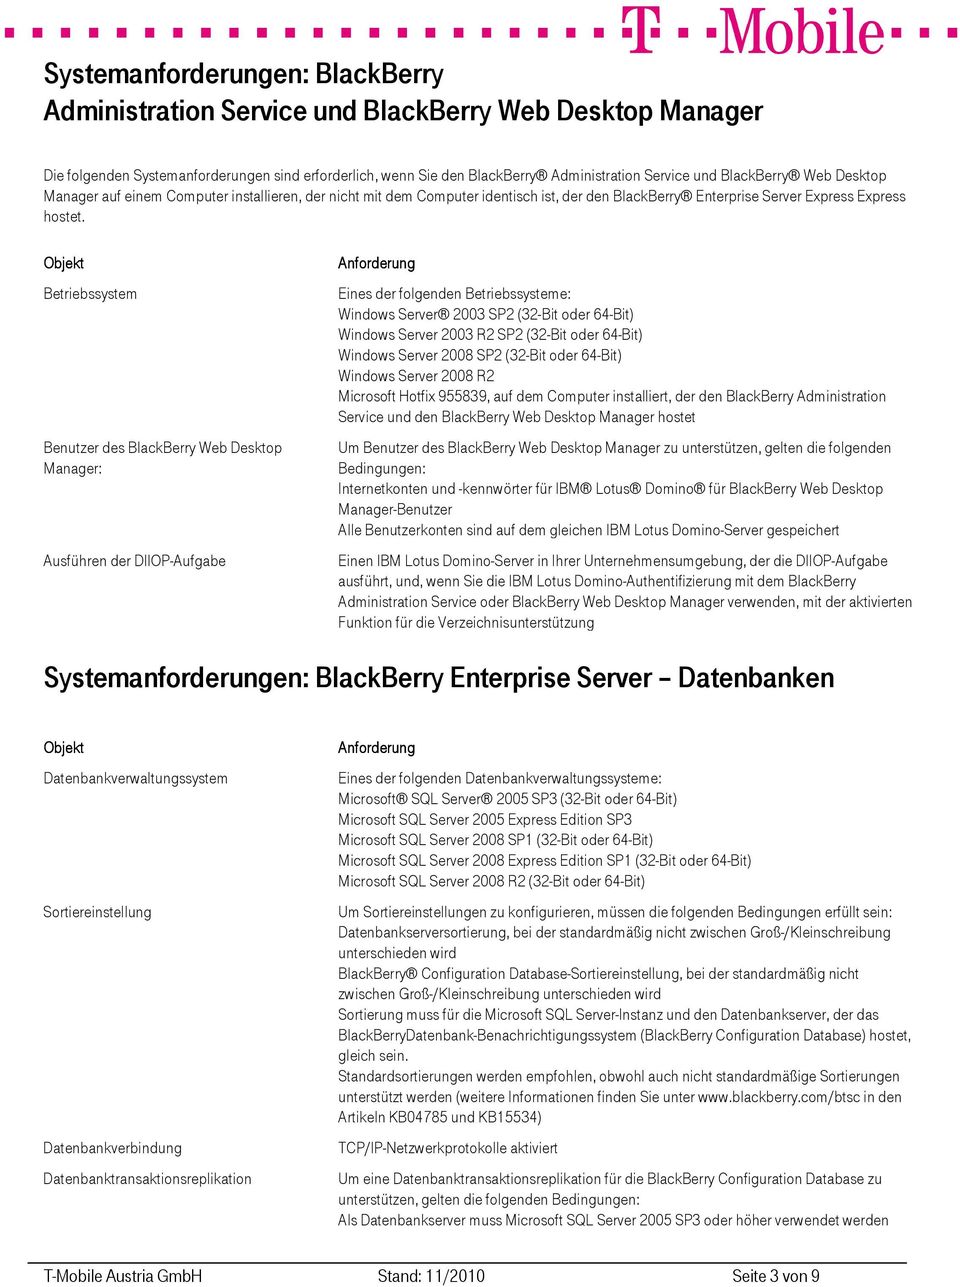 Betriebssystem Benutzer des BlackBerry Web Desktop Manager: Ausführen der DIIOP-Aufgabe Eines der folgenden Betriebssysteme: Microsoft Hotfix 955839, auf dem Computer installiert, der den BlackBerry